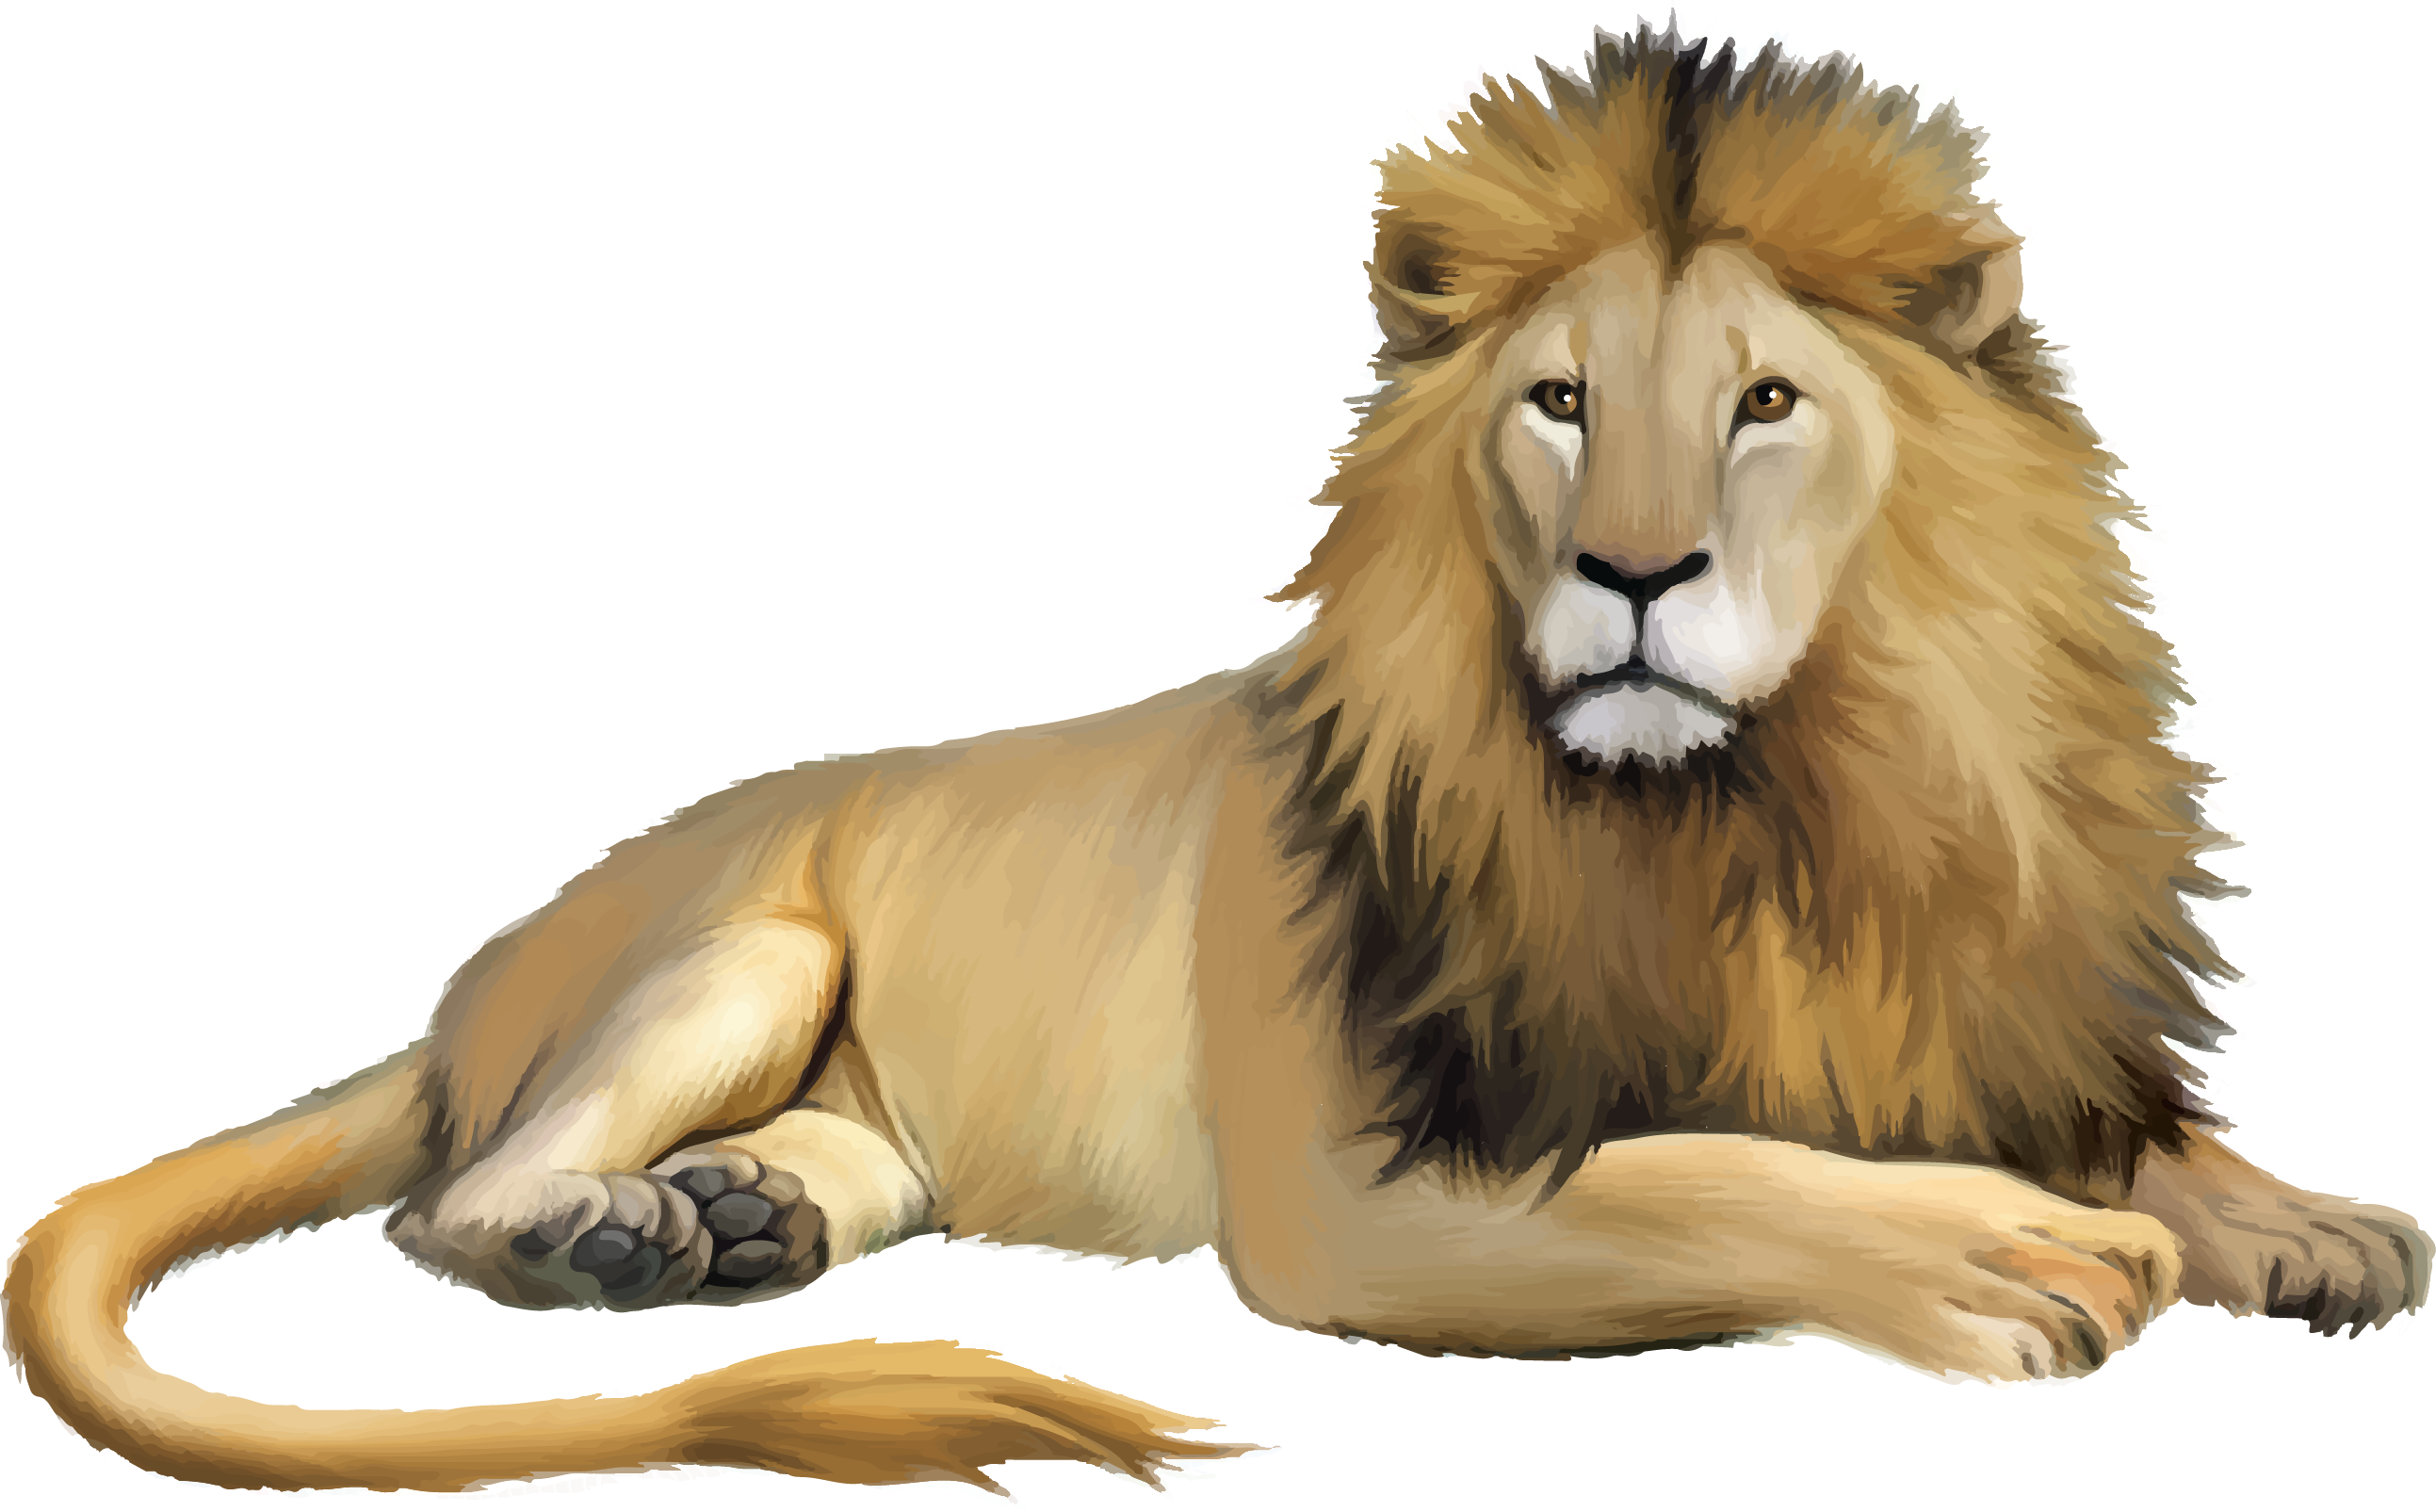 Lion Cartoon - lion png download - 2586*1605 - Free Transparent Lion ...